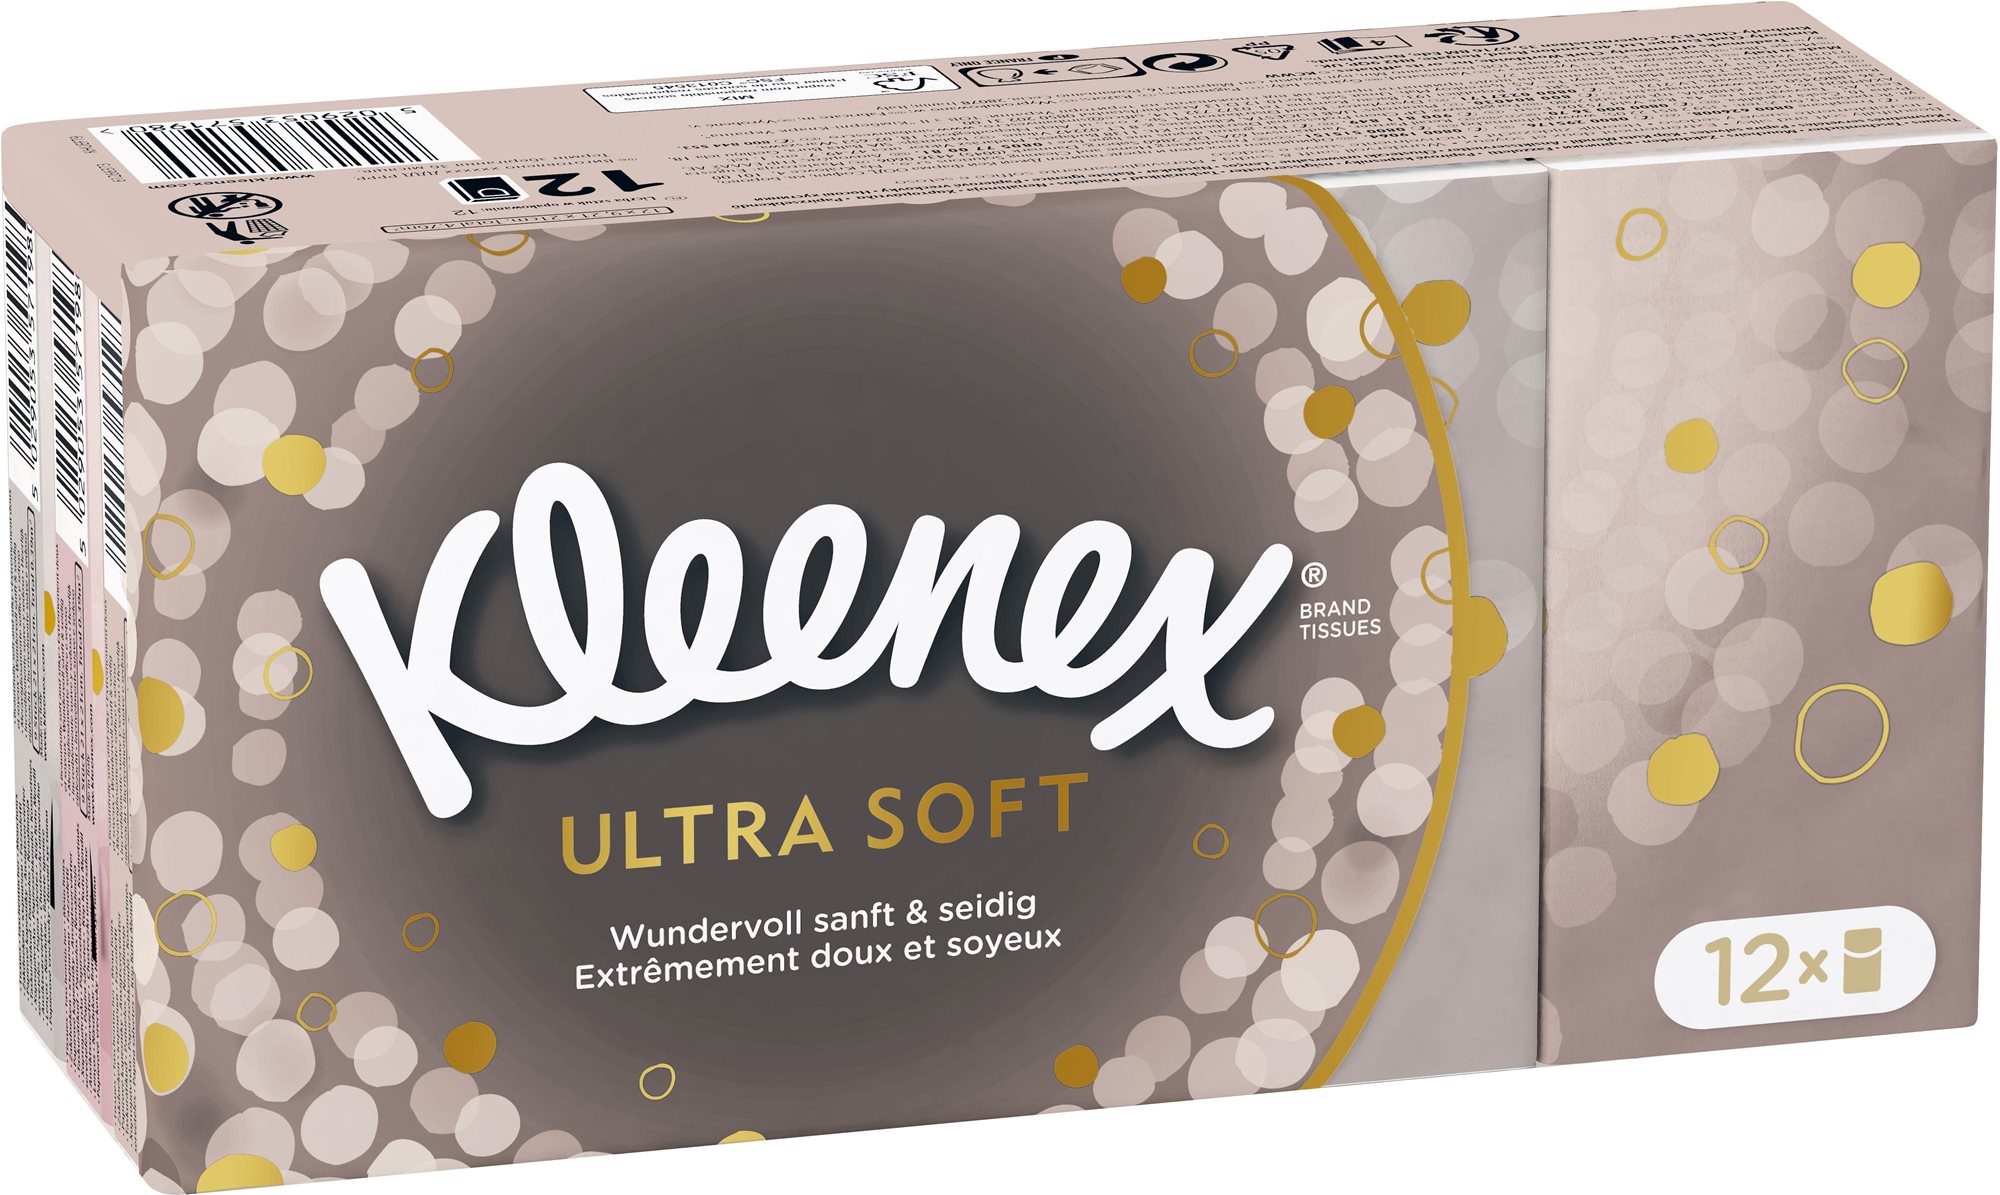 Papírzsebkendő KLEENEX Ultra Soft Hanks 12× 9 db